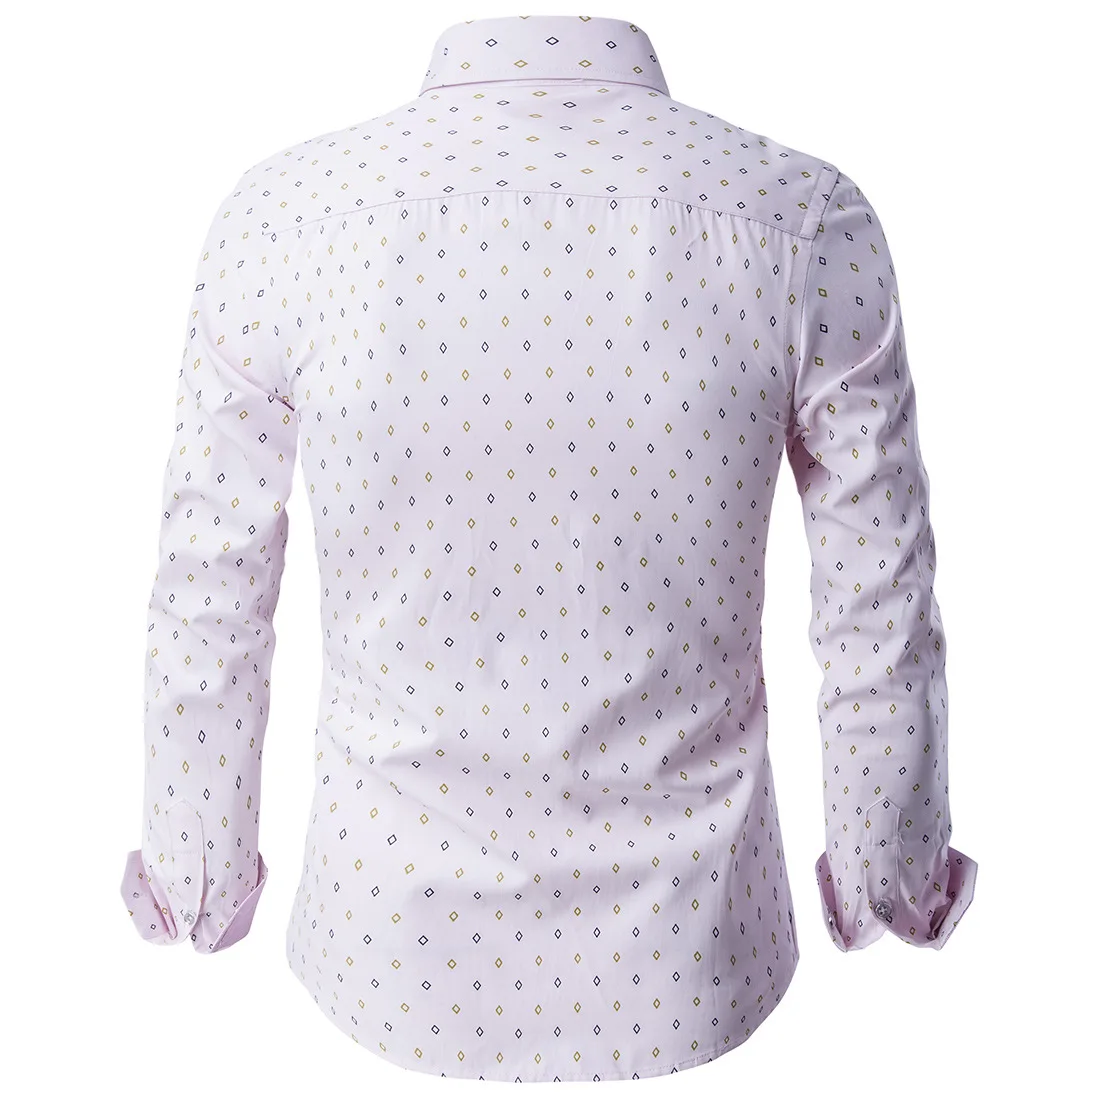 Мужская рубашка ограниченная по времени модная повседневная рубашка отложной воротник Мужская рубашка с длинными рукавами Мужская брендовая одежда